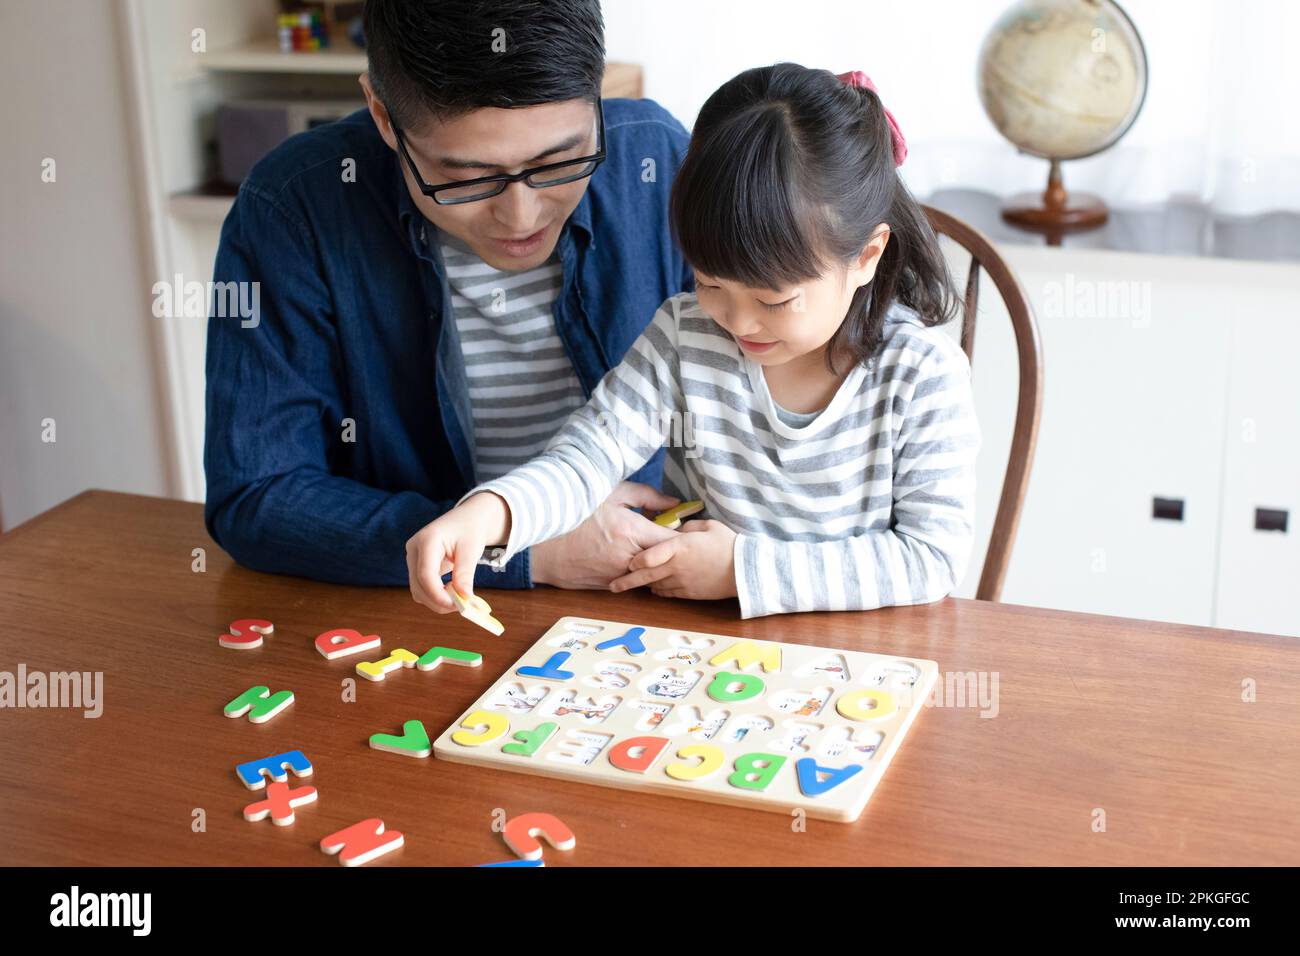 Chica haciendo rompecabezas del alfabeto y su padre ayudándola Foto de stock